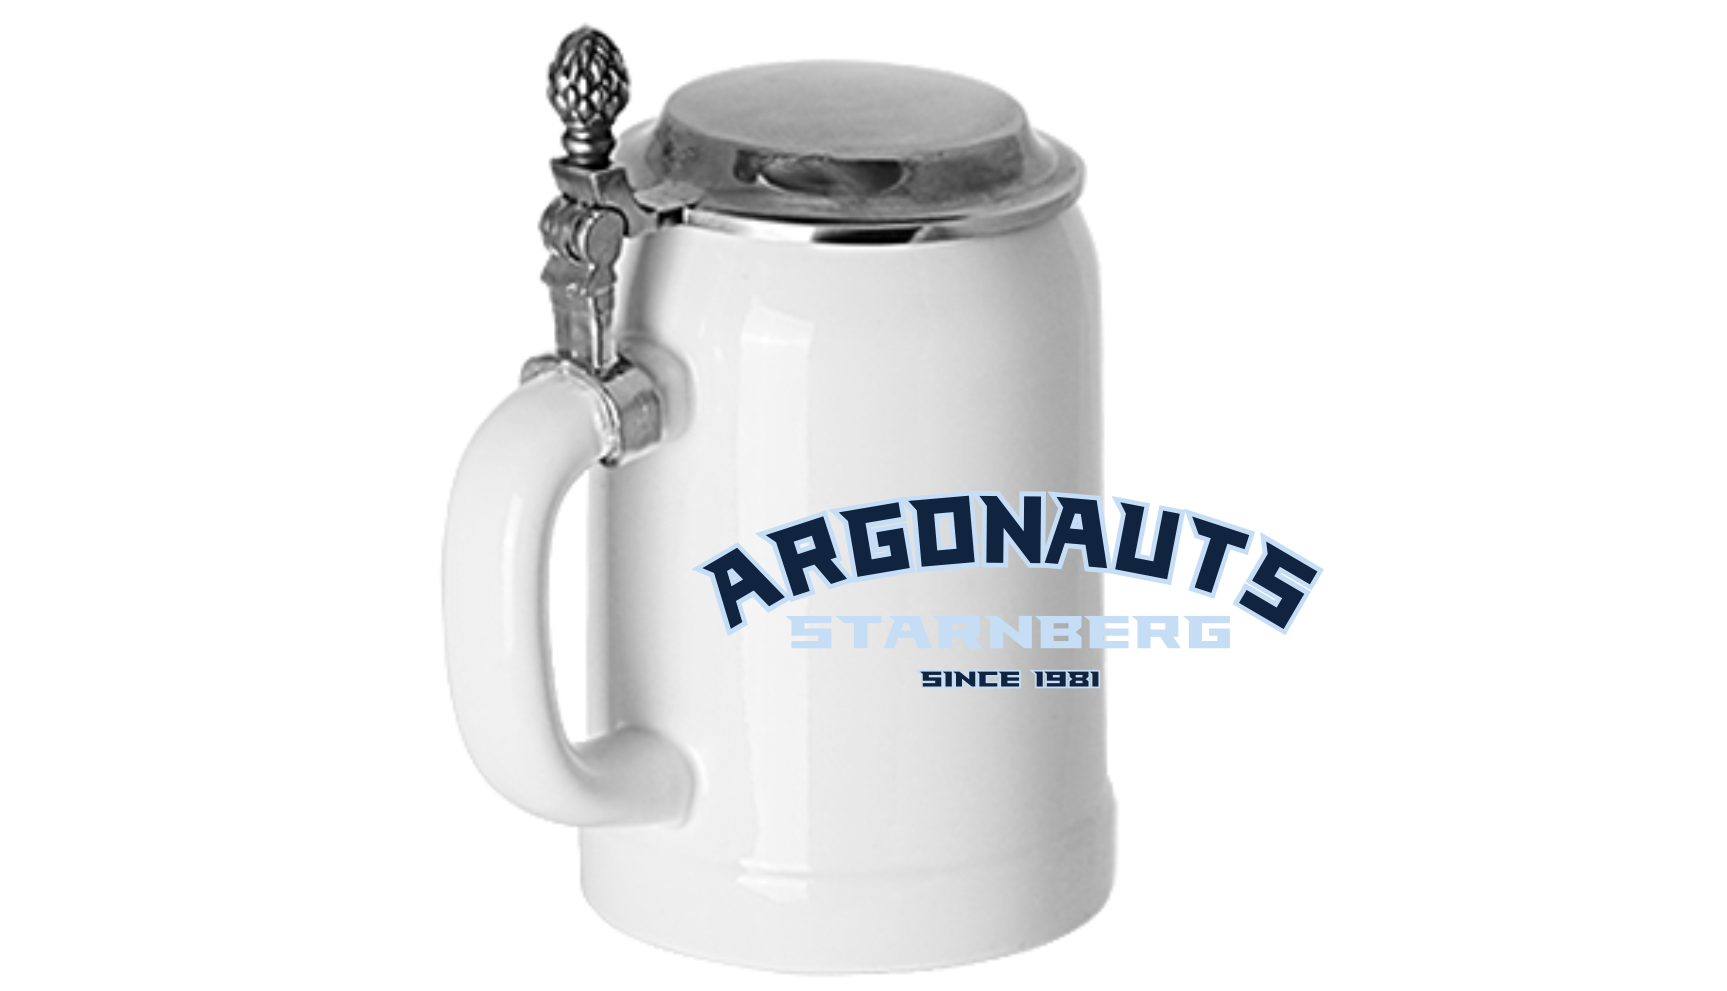 Starnberg Argonauts Bierkrug mit Zinndeckel   